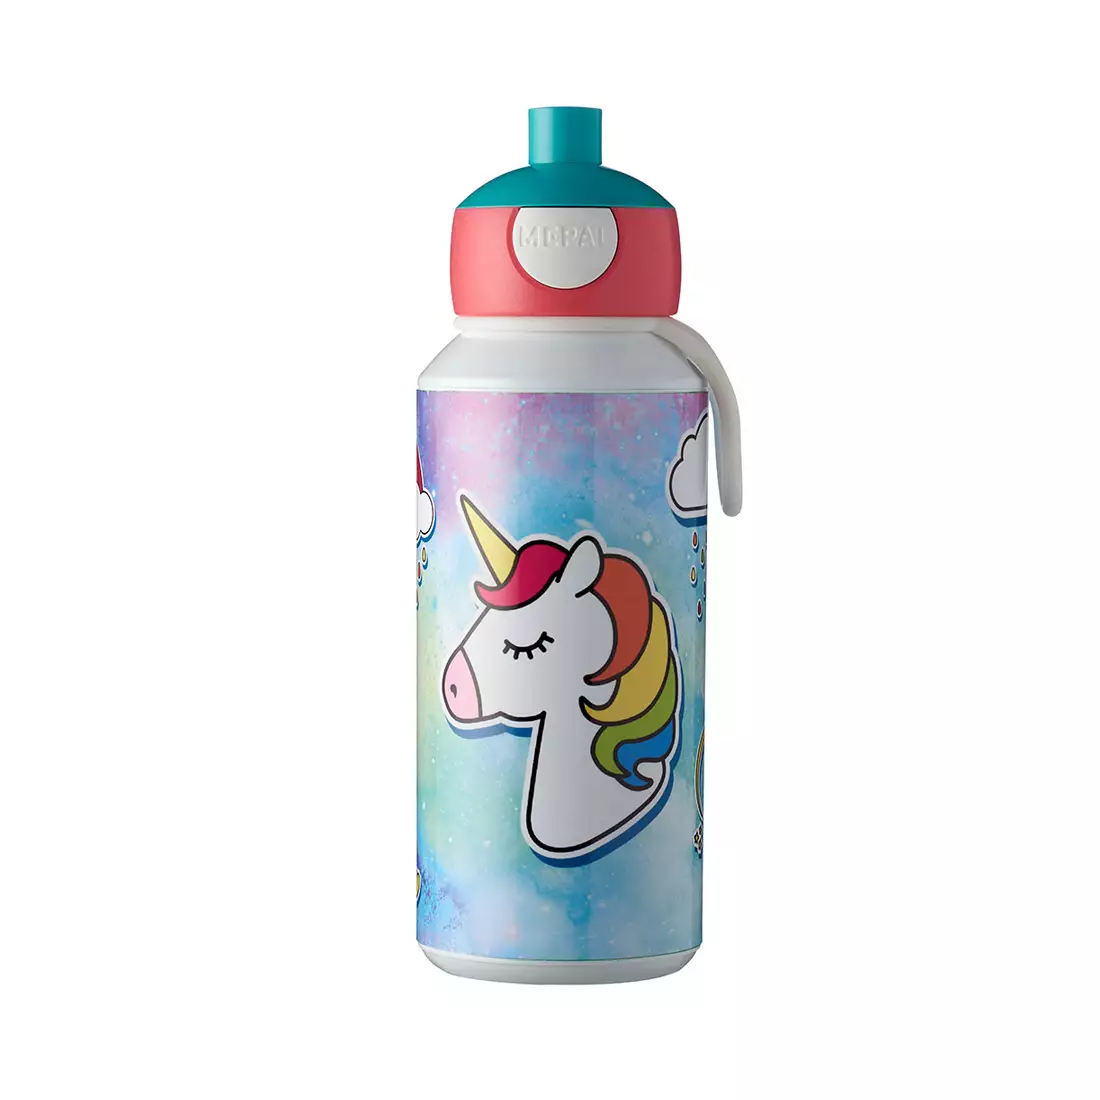 MEPAL CAMPUS POP UP Trinkflasche für Kinder 400ml Unicorn